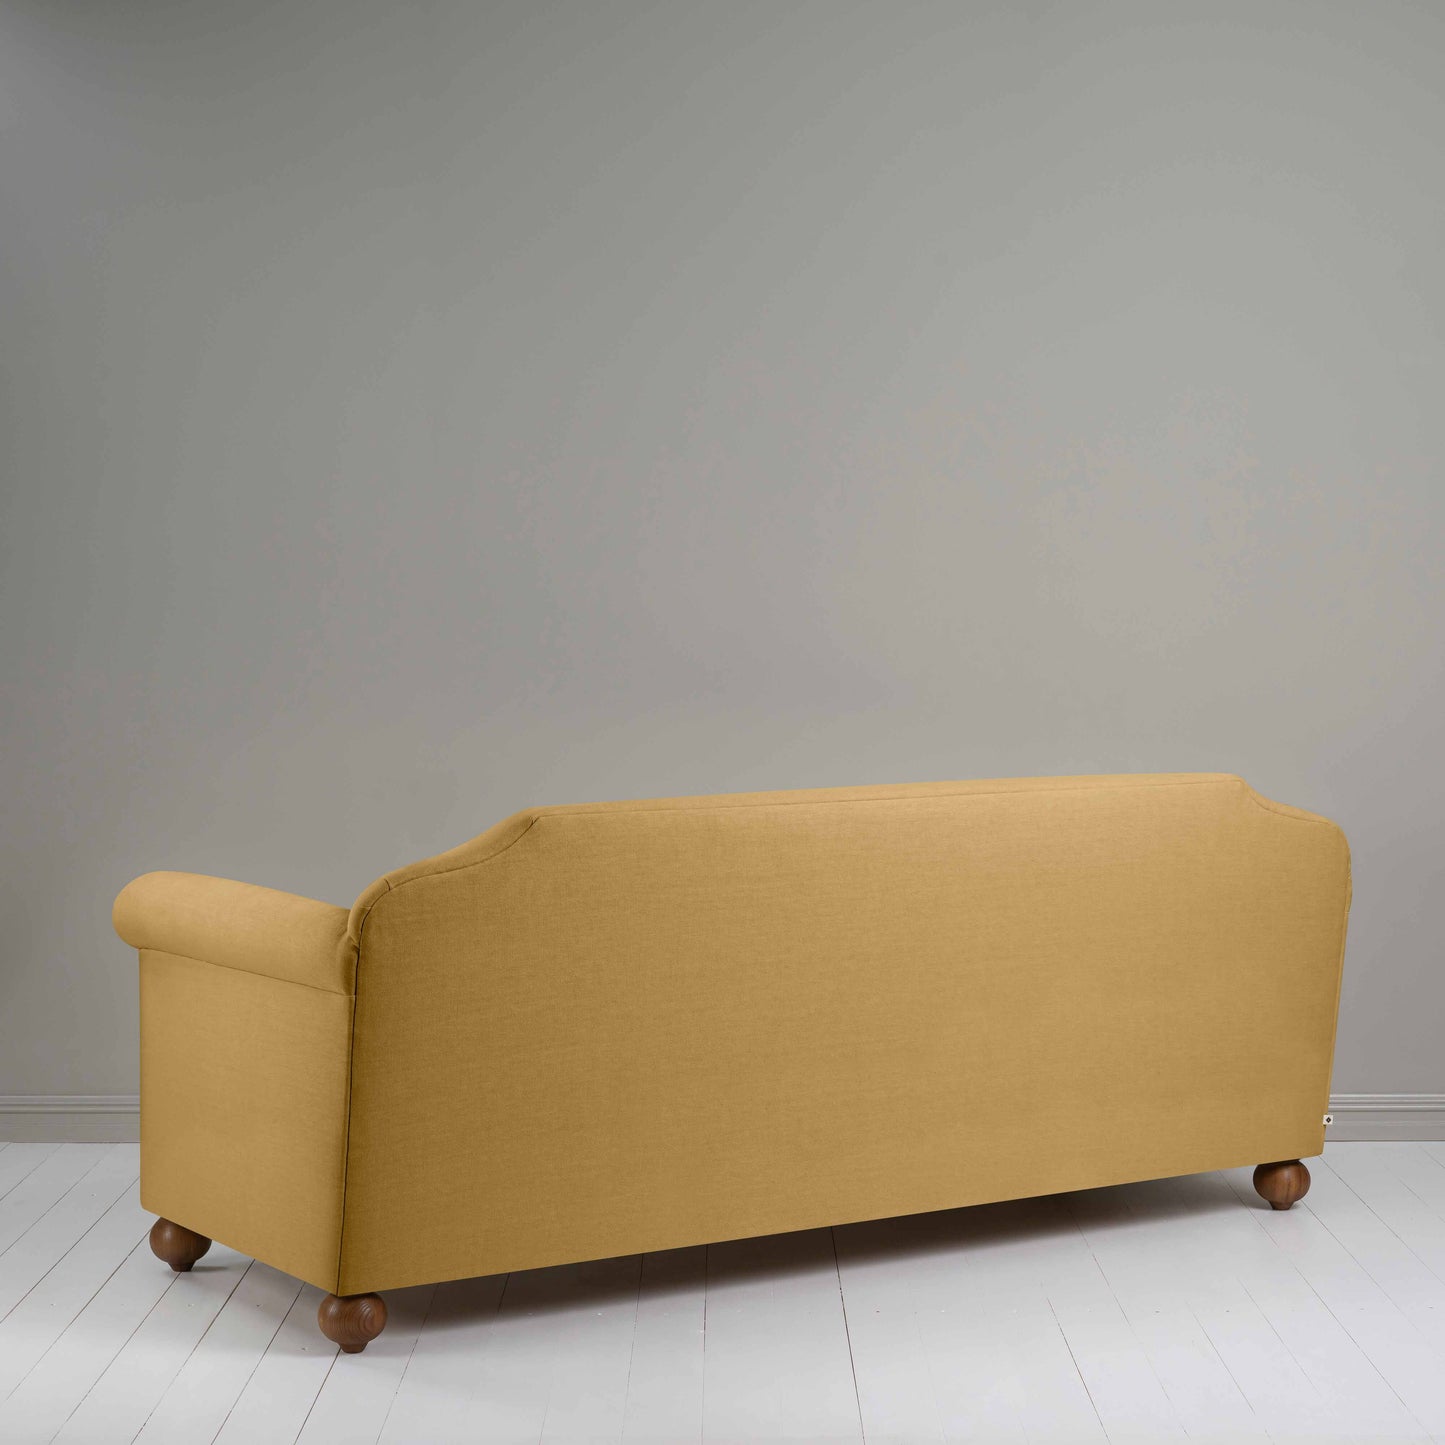 Dolittle 4 seater Sofa in Laidback Linen Ochre